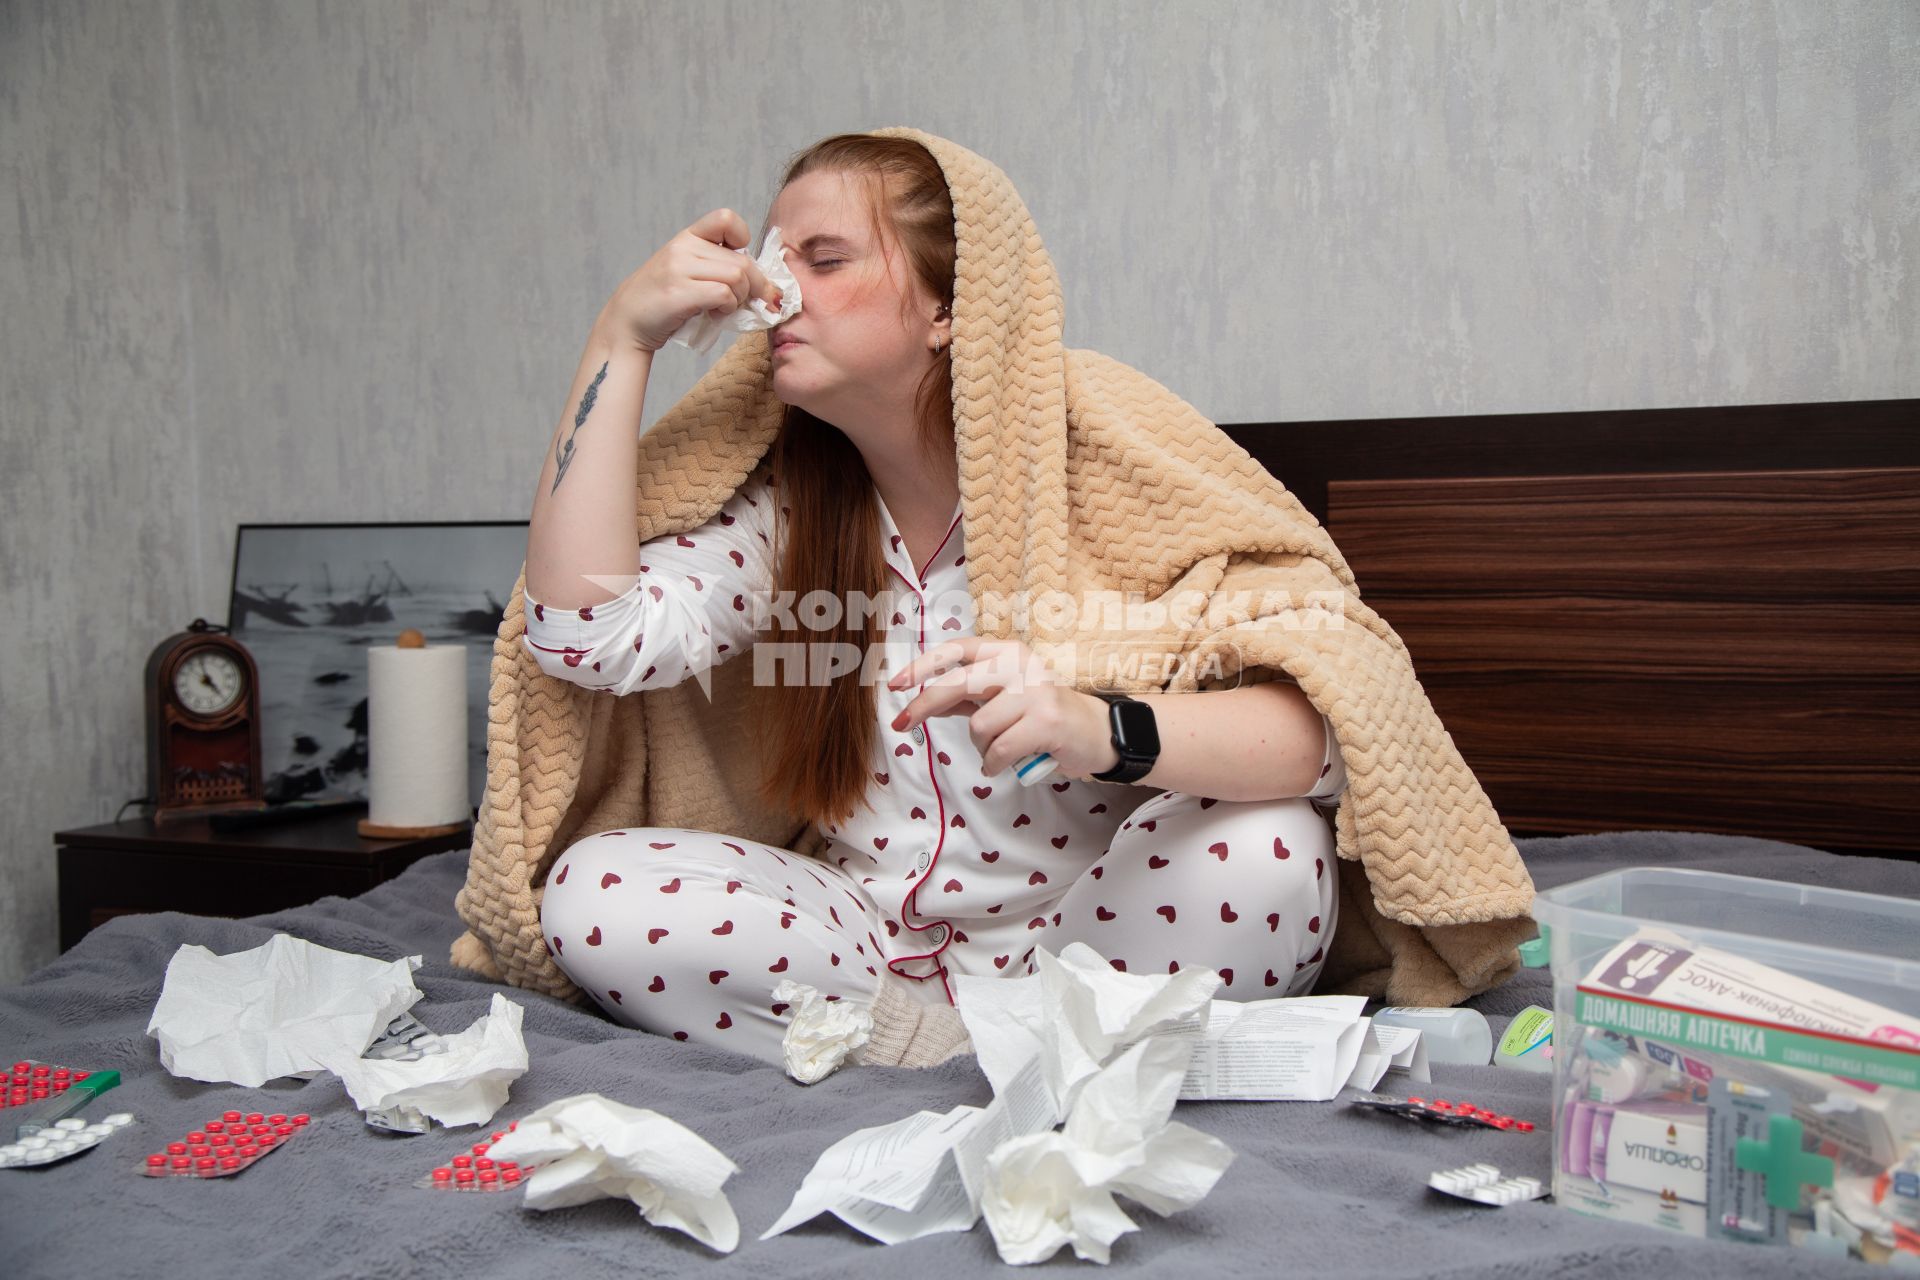 Москва. Девушка лечится от простуды дома.